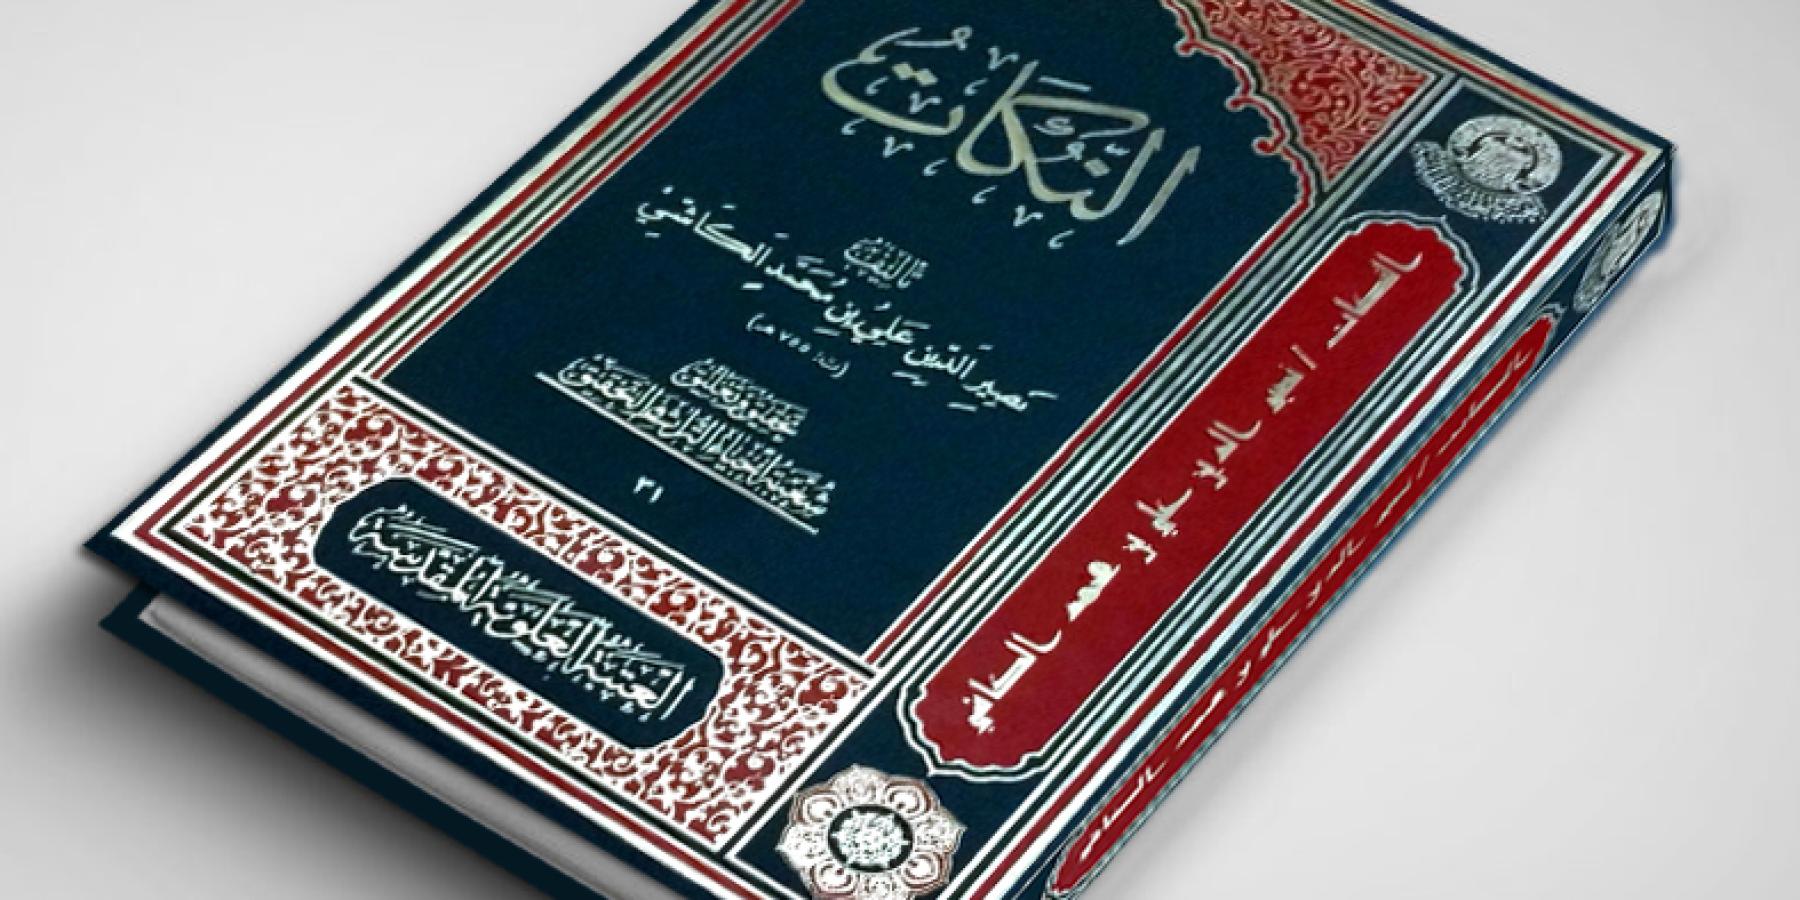 شعبة إحياء التراث في العتبة العلوية تنجز تحقيق كتاب "النكات" للعالم الجليل علي بن محمد الكاشي 